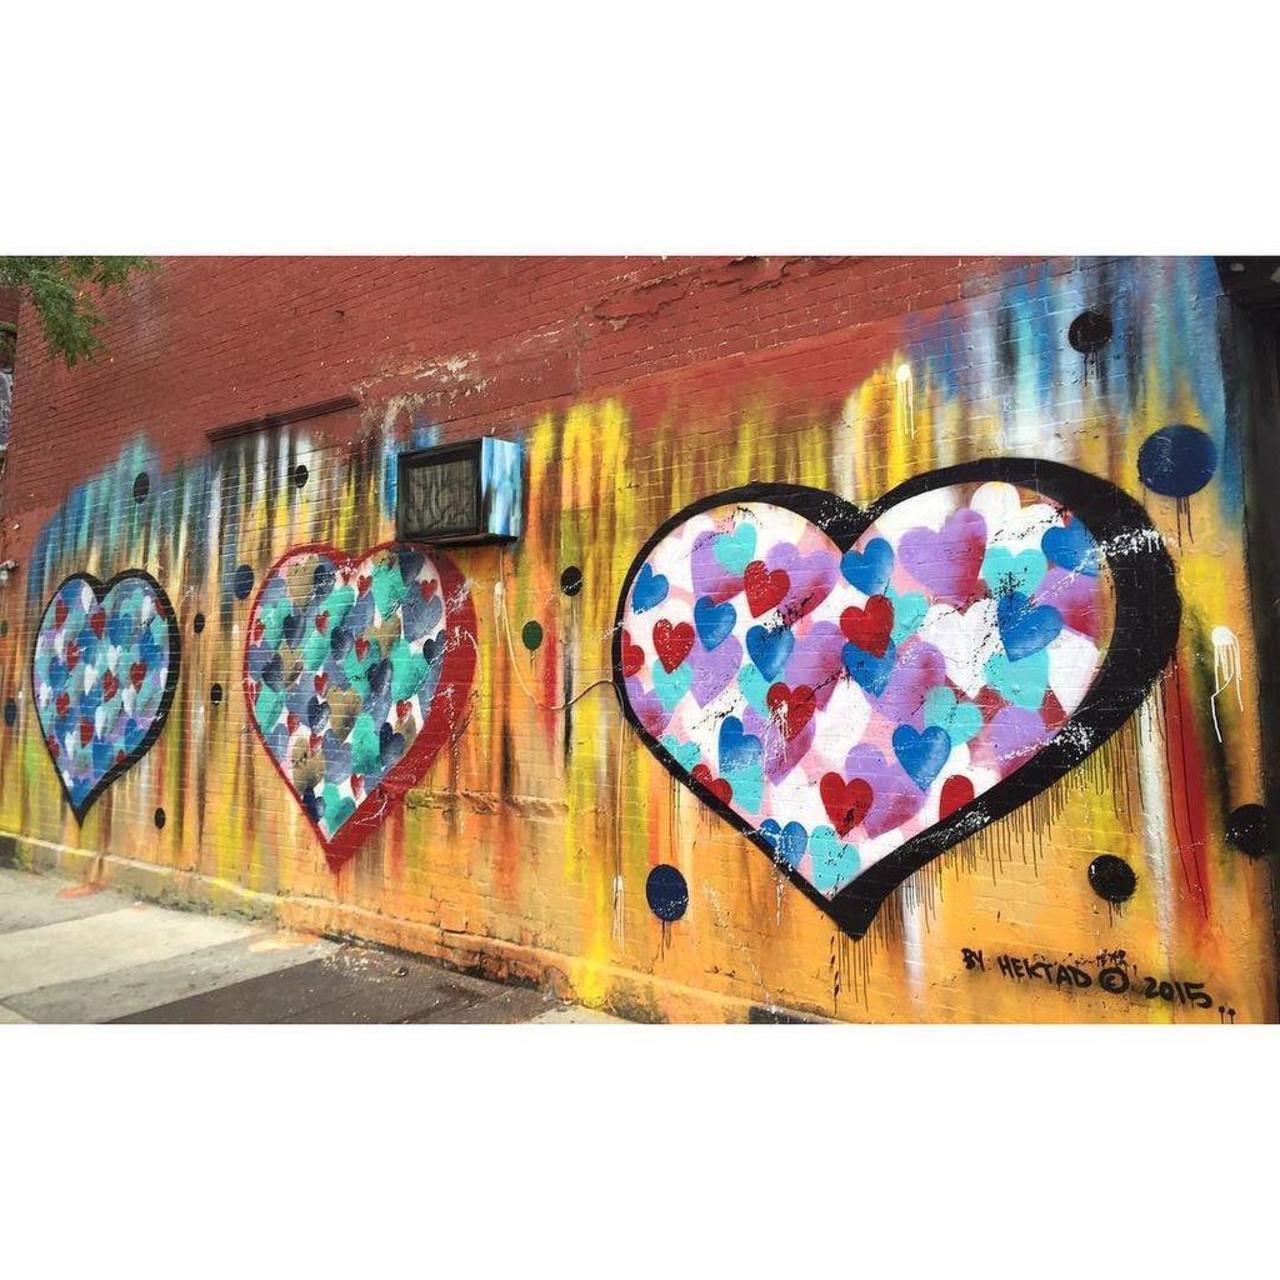 RT @StArtEverywhere: By @hektad._official #hektad 2015 #streetartnyc #streetart #colorful #hearts #graffiti #mural #wall #September13,20… http://t.co/DJj3gZ1hk3